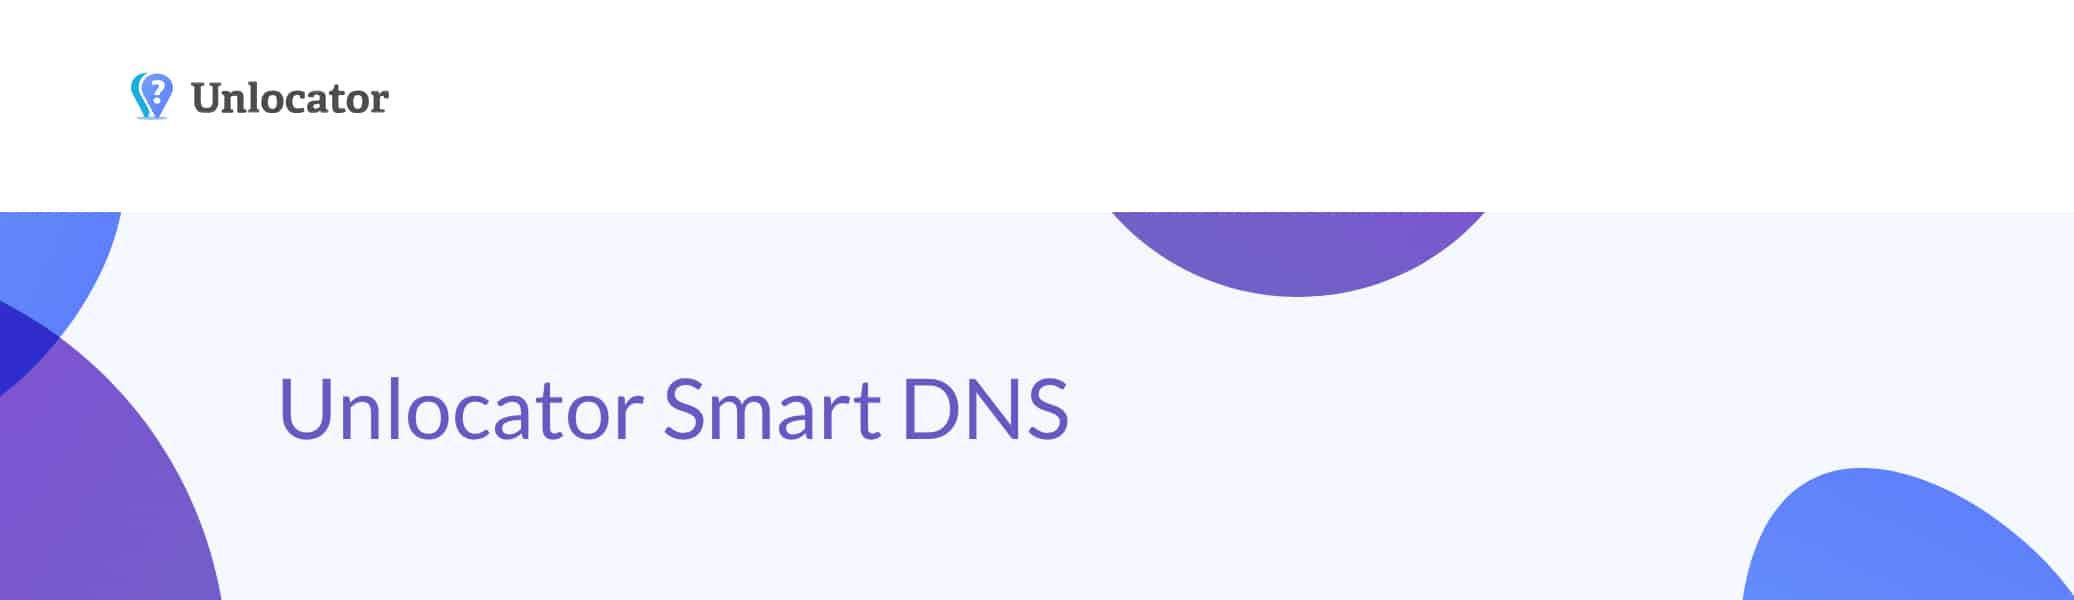 Unlocator Smart DNS